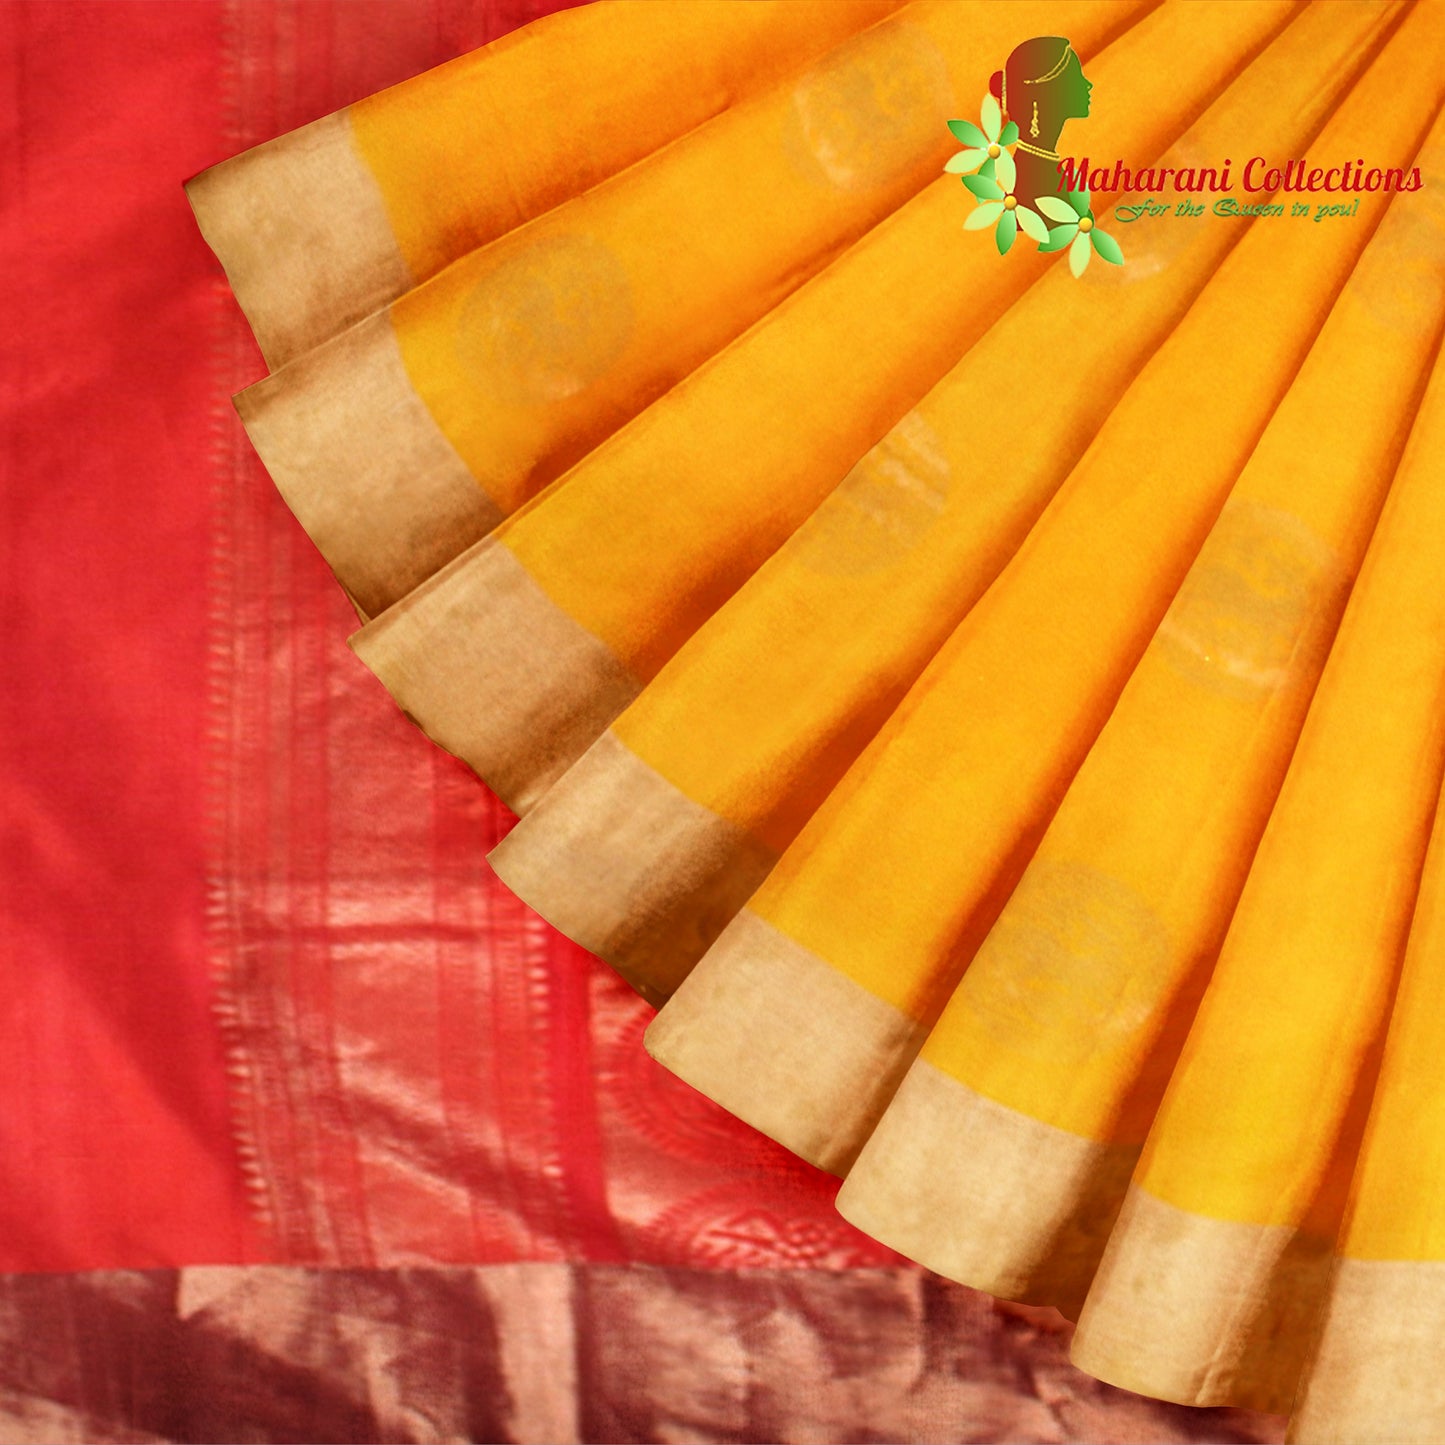 Maharani's Pure Handloom Kanjivaram Silk Saree - Yellow with Red Pallu and Golden Zari Border